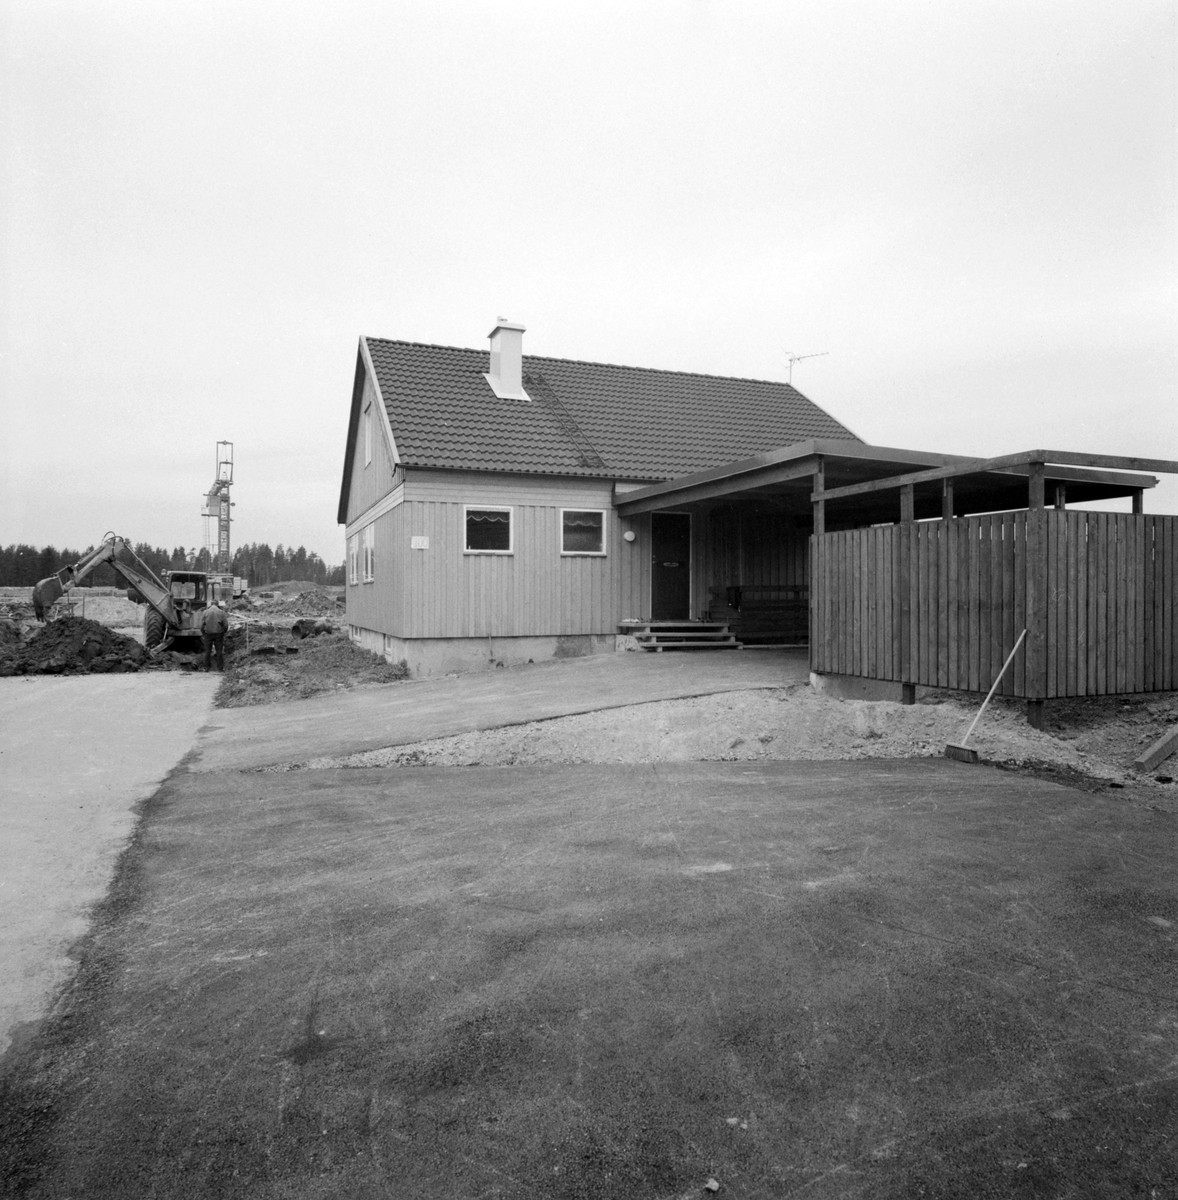 År 1971 stod de första så kallade KB-villorna klara för inflyttning i Linköping. Bakom husens benämning stod firma KB-bygg som grundats 1964 av byggmästarna Lars Kvissberg och Carl-Owe Bäckström. I slutet av 1960-talet hade de bägge herrarna vunnit anbudstävlingen kring att uppföra 261 villor i stadsdelen Ryd. Den speciella KB-villan togs fram och konstruerades med fribärade takstolar och avsaknad av bärande väggar i såväl botten- som övervåningen. Det möjliggjorde en unik flexibilitet av varje villas planlösningen vilket gav köparna stora möjligheter att påverka rumsindelningen. KB-villan gjorde stort intryck på bomässan i Norrköping 1971 och året därpå utsåg tidningen Allt i Hemmet KB-villan till "Årets hus". En succé var född.
Om vi hyser tilltro för det provisoriska numret på husgaveln visar bilden villan på adressen Heidenstams gata 100.